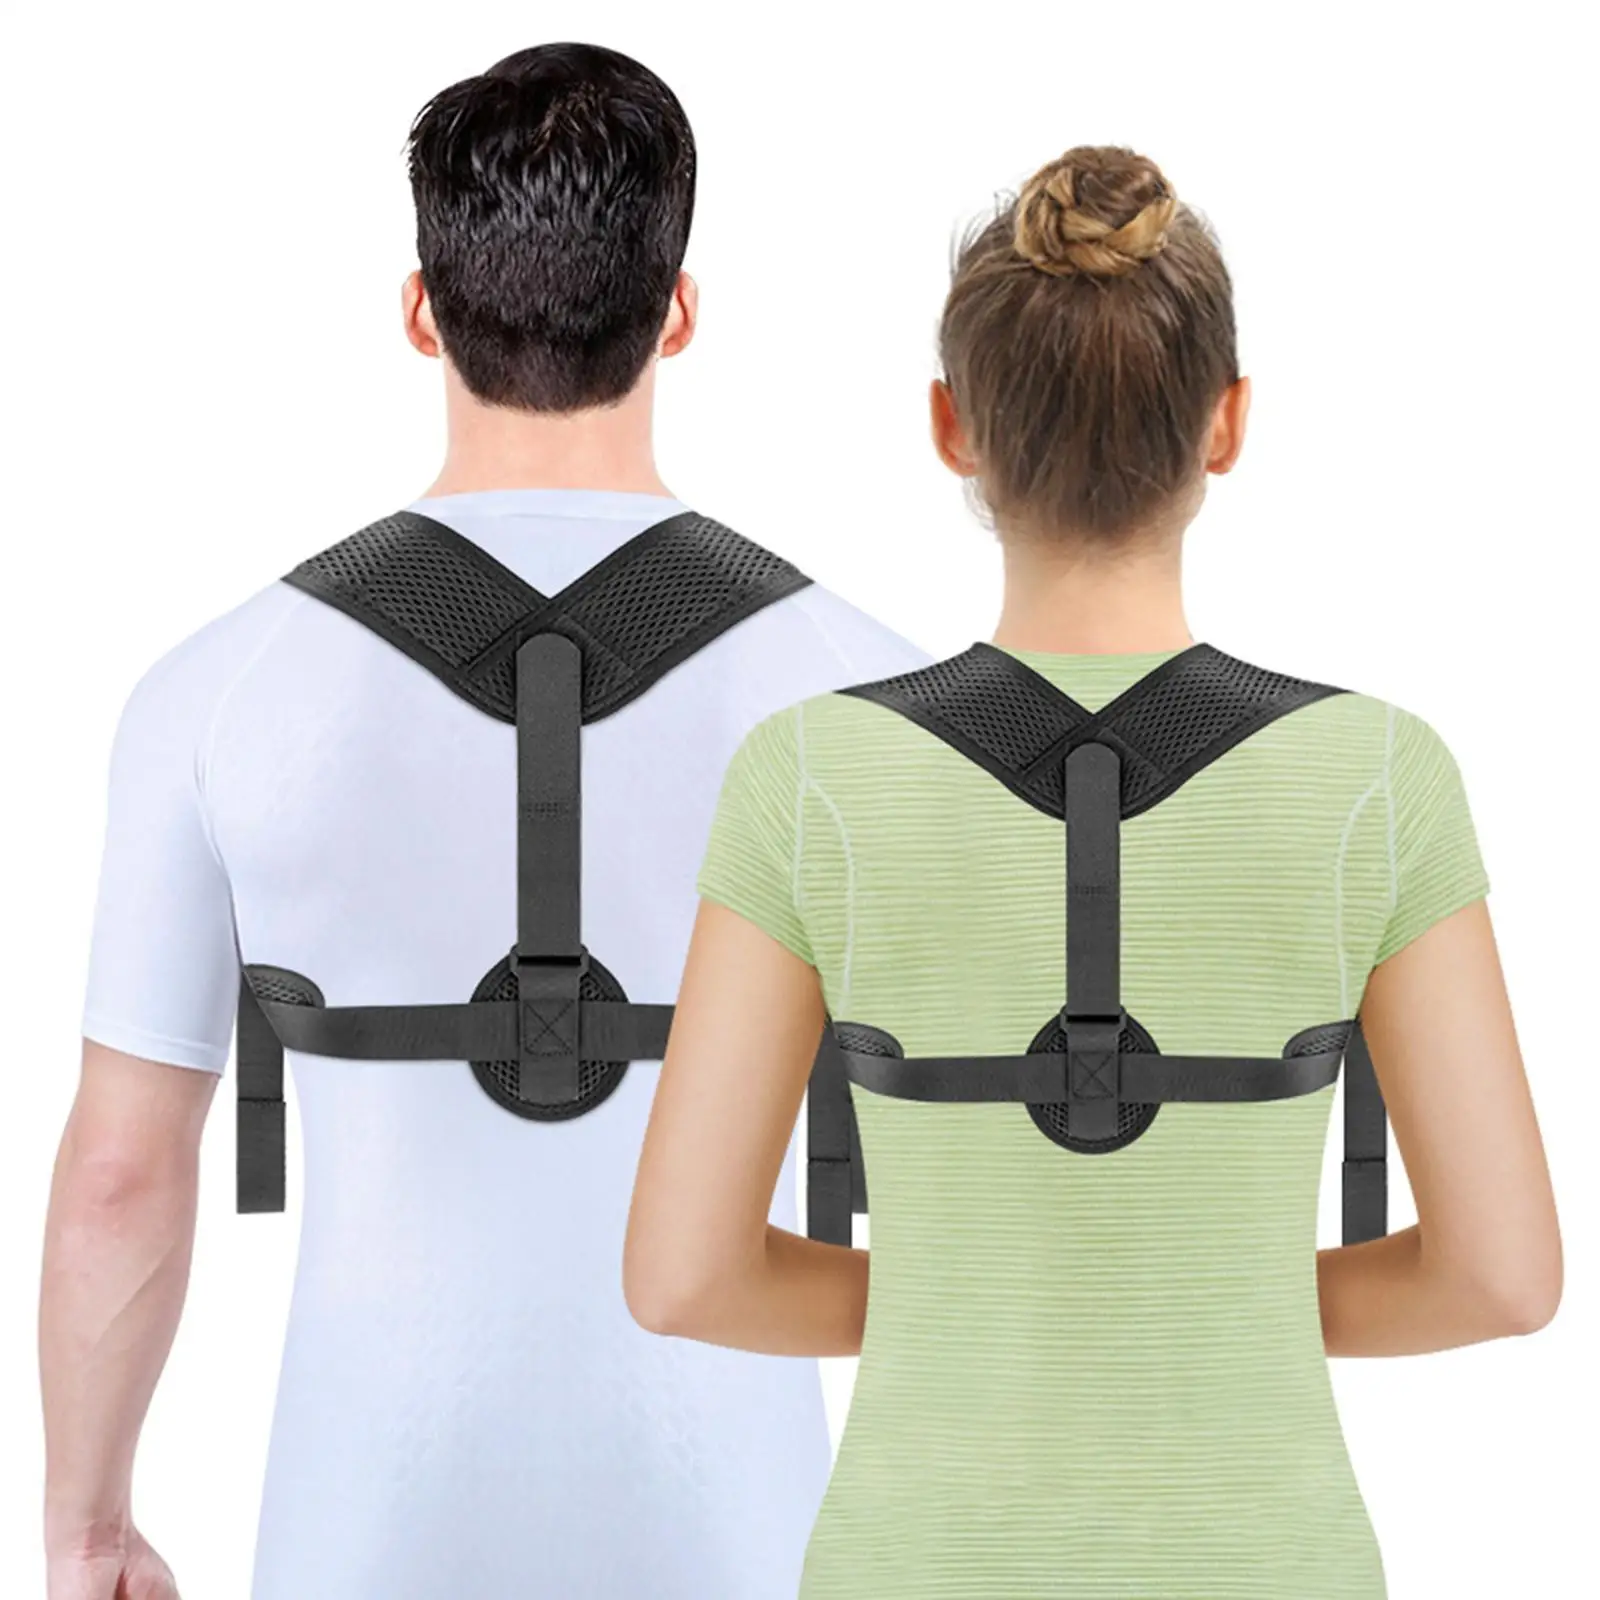 Adjustable Posture Corrector Shoulder Support Back Straightener Women Men Back Correction Belt for Clavicle Shoulder Spine Neck